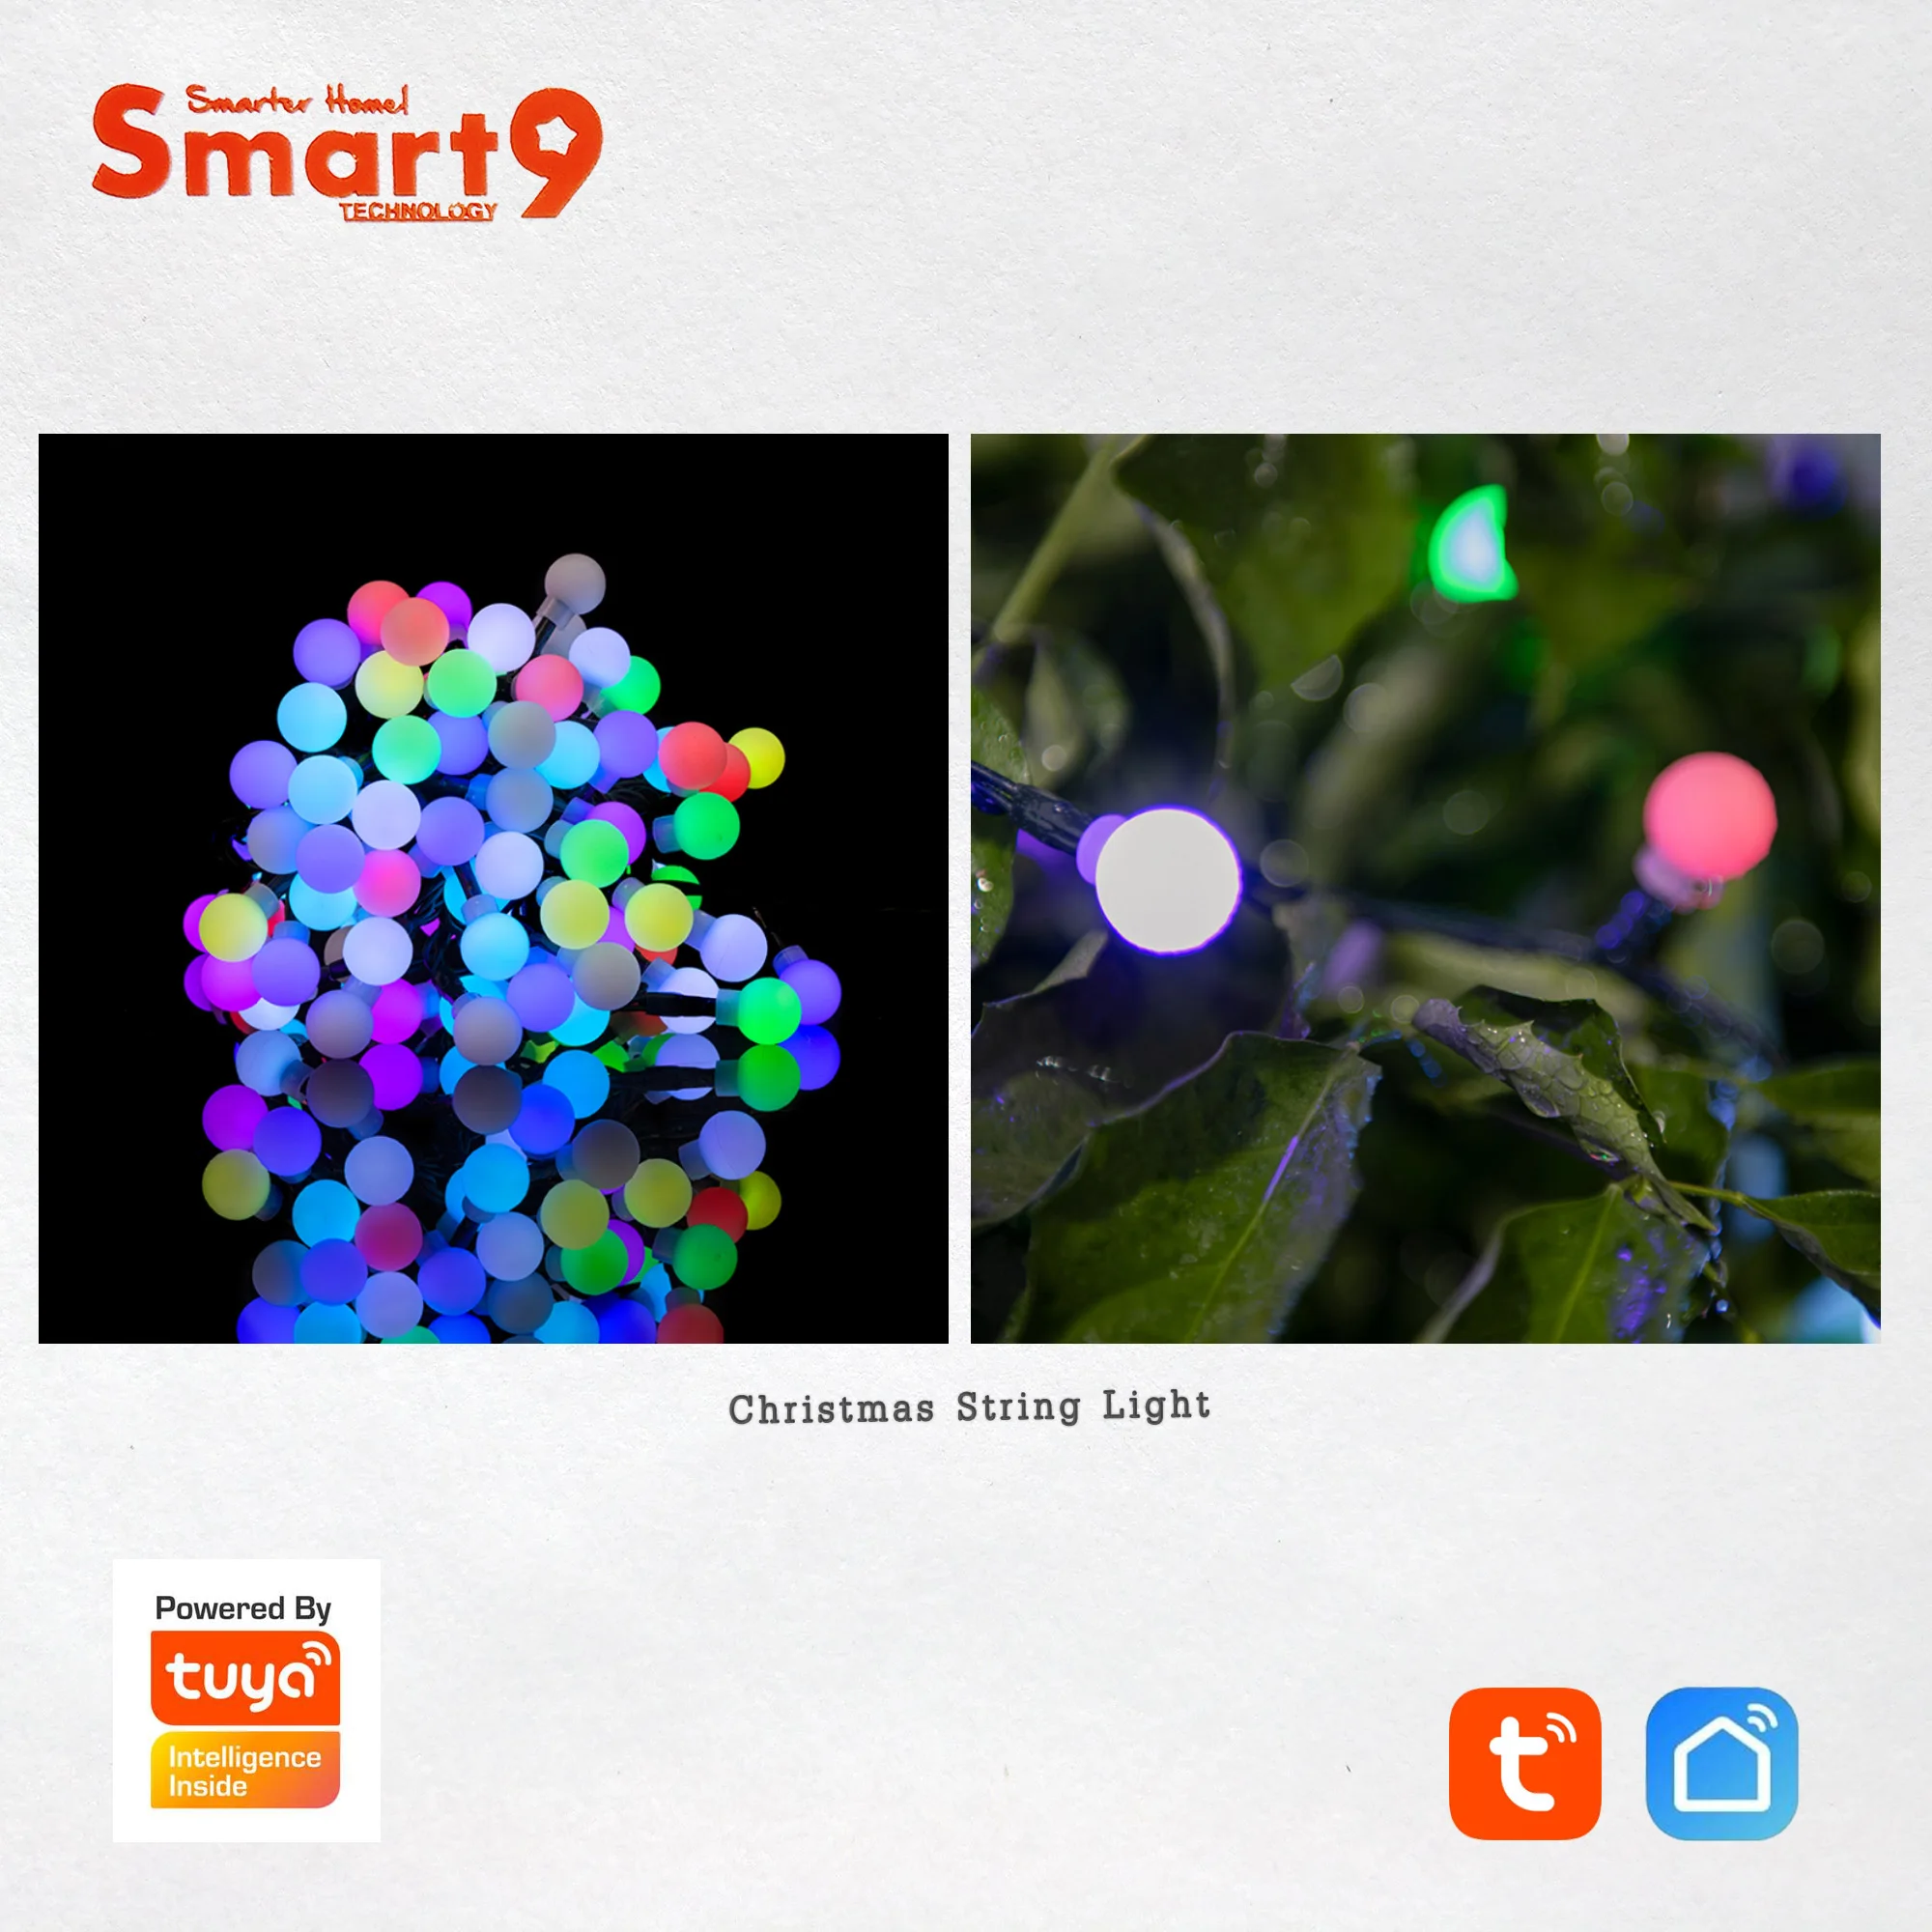 Smart9 струнный светильник на Рождество, умный RGB светодиодный 100 светильник s Wi-Fi подключение, Smart Life APP дистанционное управление, питание от TuYa